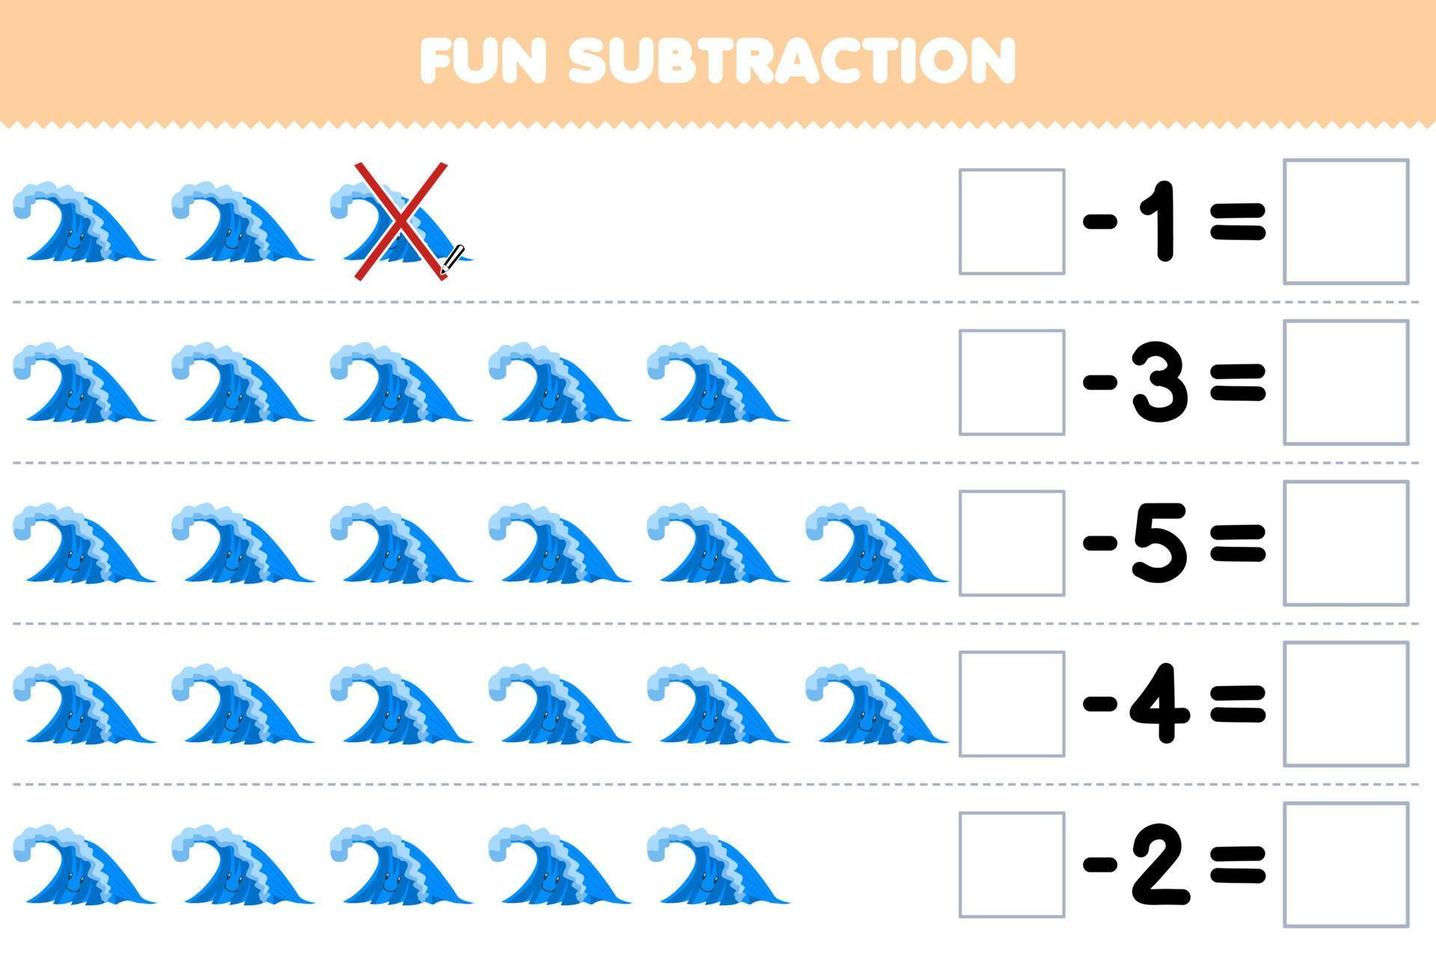 Lernspiel für Kinder Spaßsubtraktion durch Zählen der niedlichen Cartoon-Welle in jeder Reihe und Eliminieren des druckbaren Naturarbeitsblatts vektor